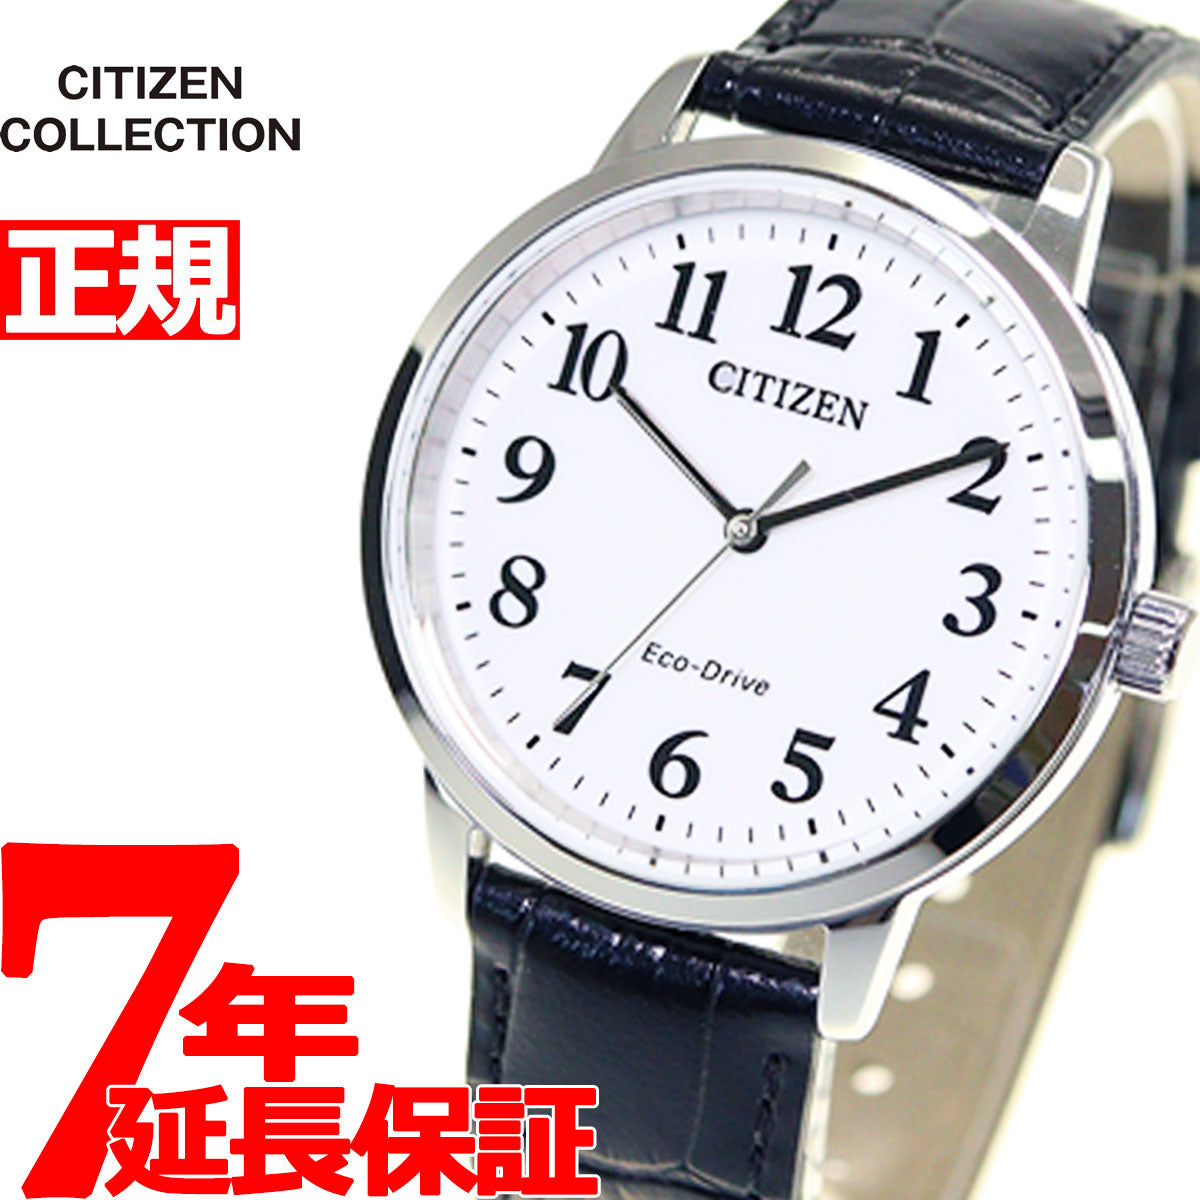 シチズンコレクション メンズ 腕時計 エコドライブ ソーラー BJ6541-15A CITIZEN ホワイト×ブラック